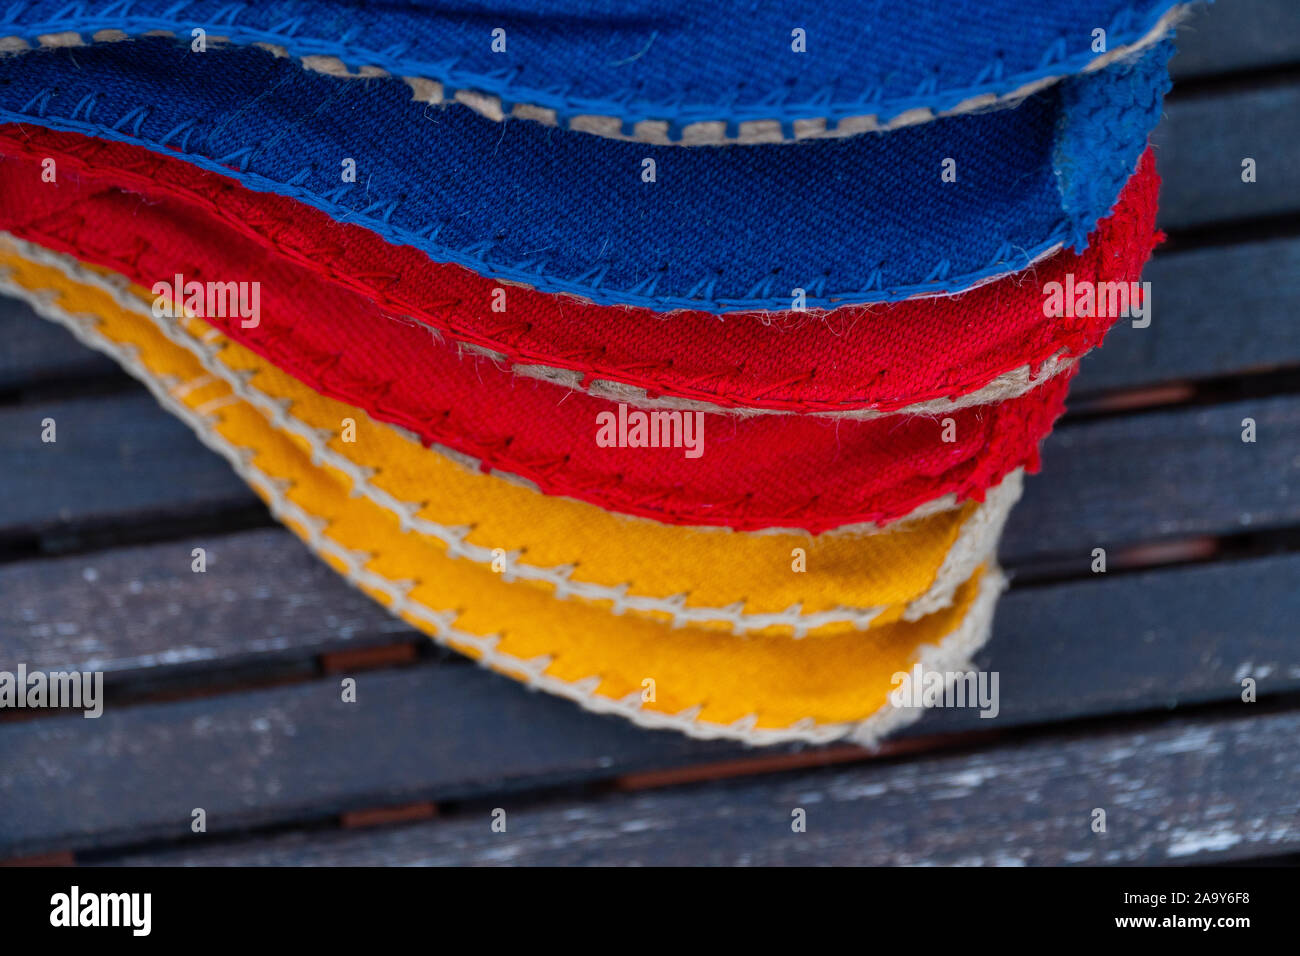 Une pile de tissu coloré chaussures jaune, rouge, bleu sur une table en bois Banque D'Images